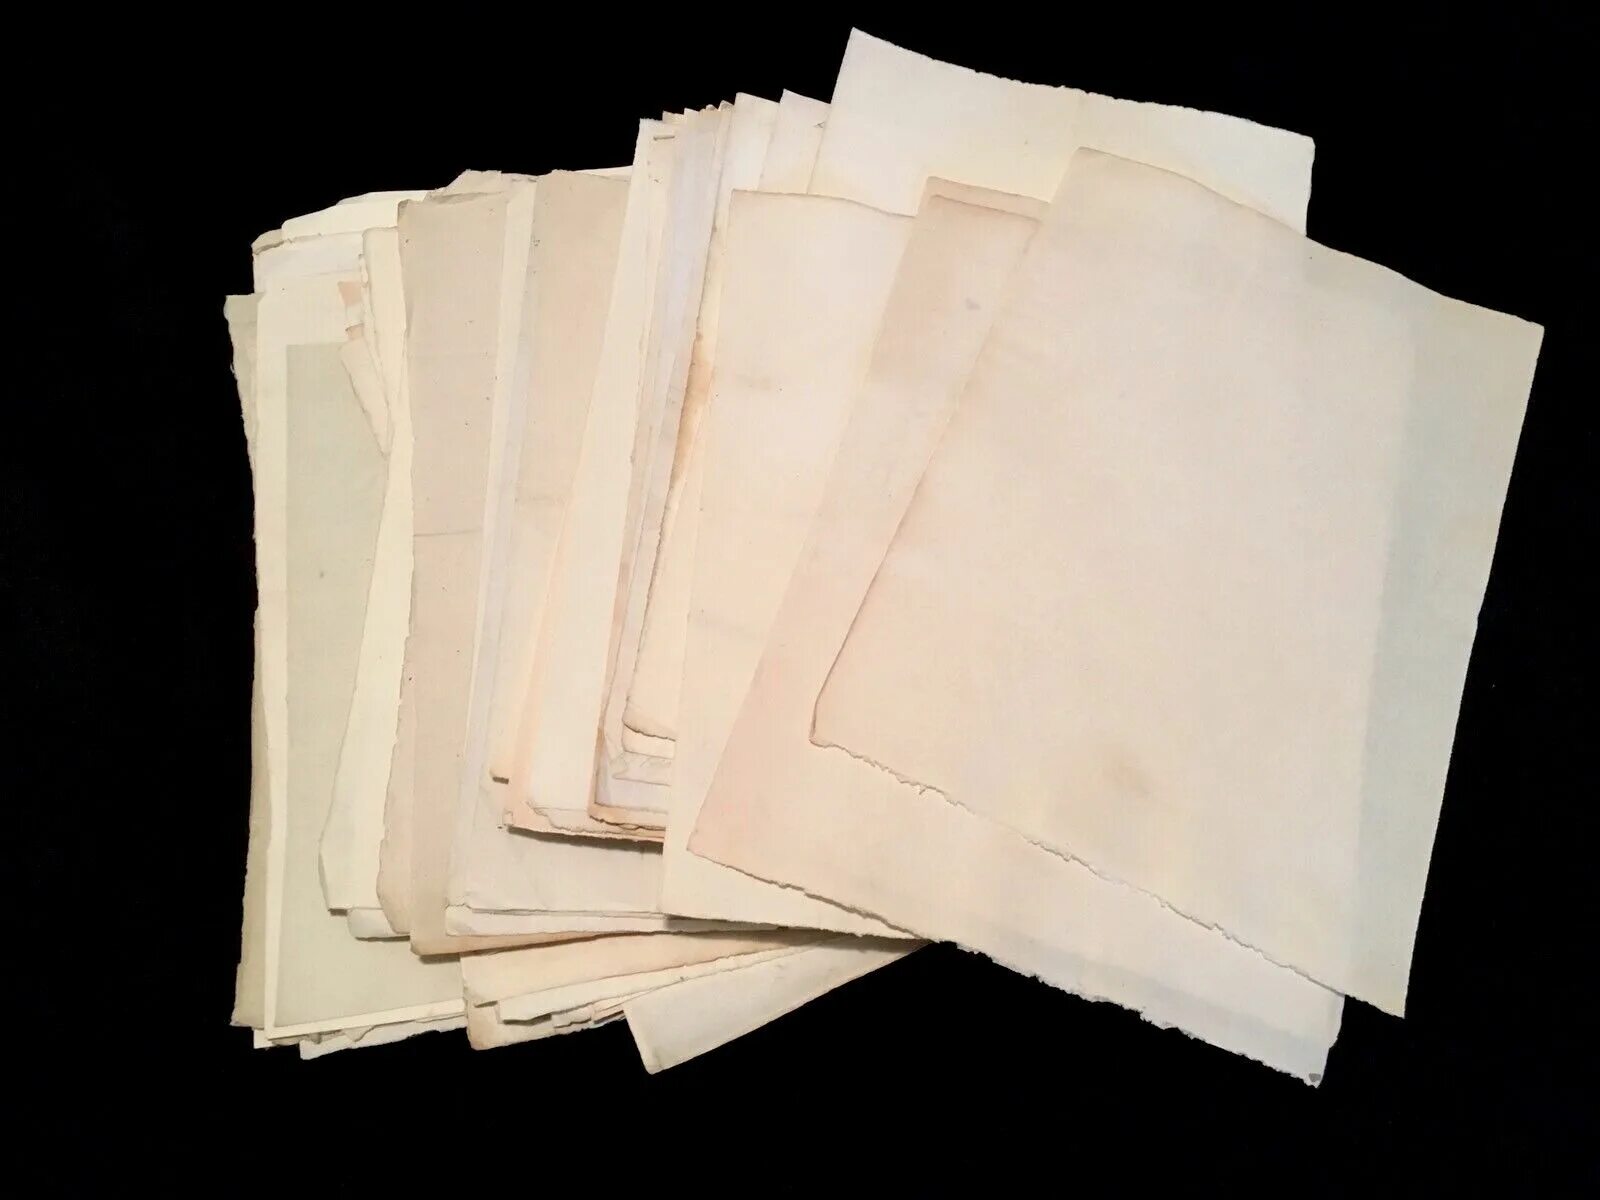 Types papers. Писчая бумага. Реставрационная бумага. Реставрационная папиросная бумага. Лист белой писчей бумаги.